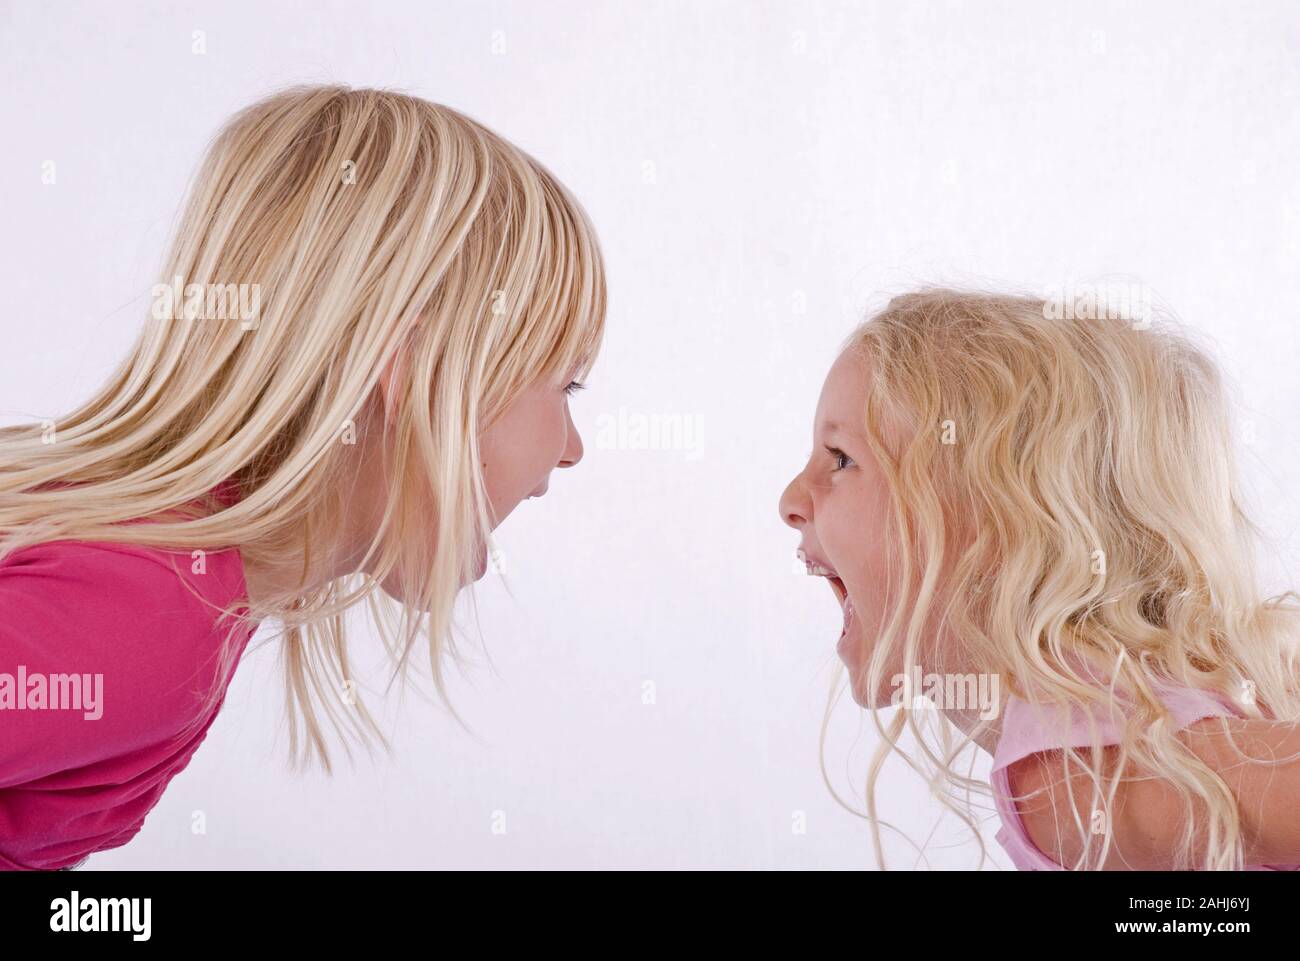 Zwei rubia Mädchen, 6 und Jahre alt, Schulmädchen, schreien sich an, señor:Yes Foto de stock